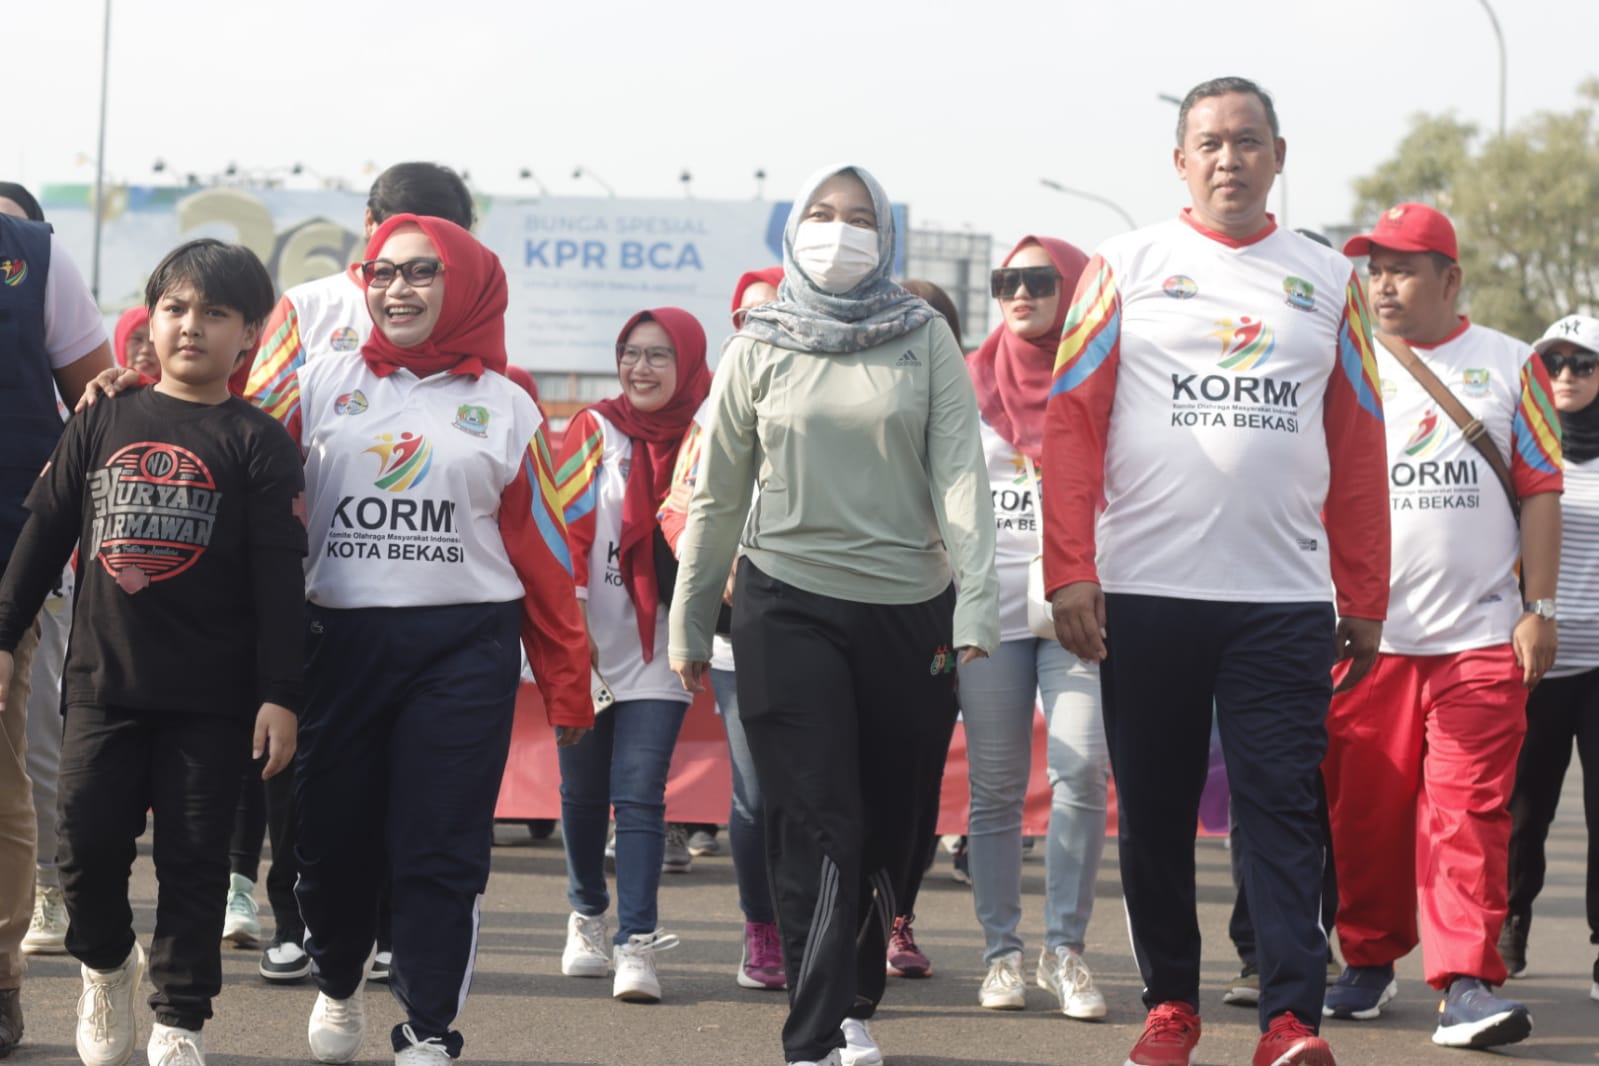 Plt. Wali Kota Bekasi Tri Adhianto Buka Parade Energik Ceria Kormi Kota Bekasi